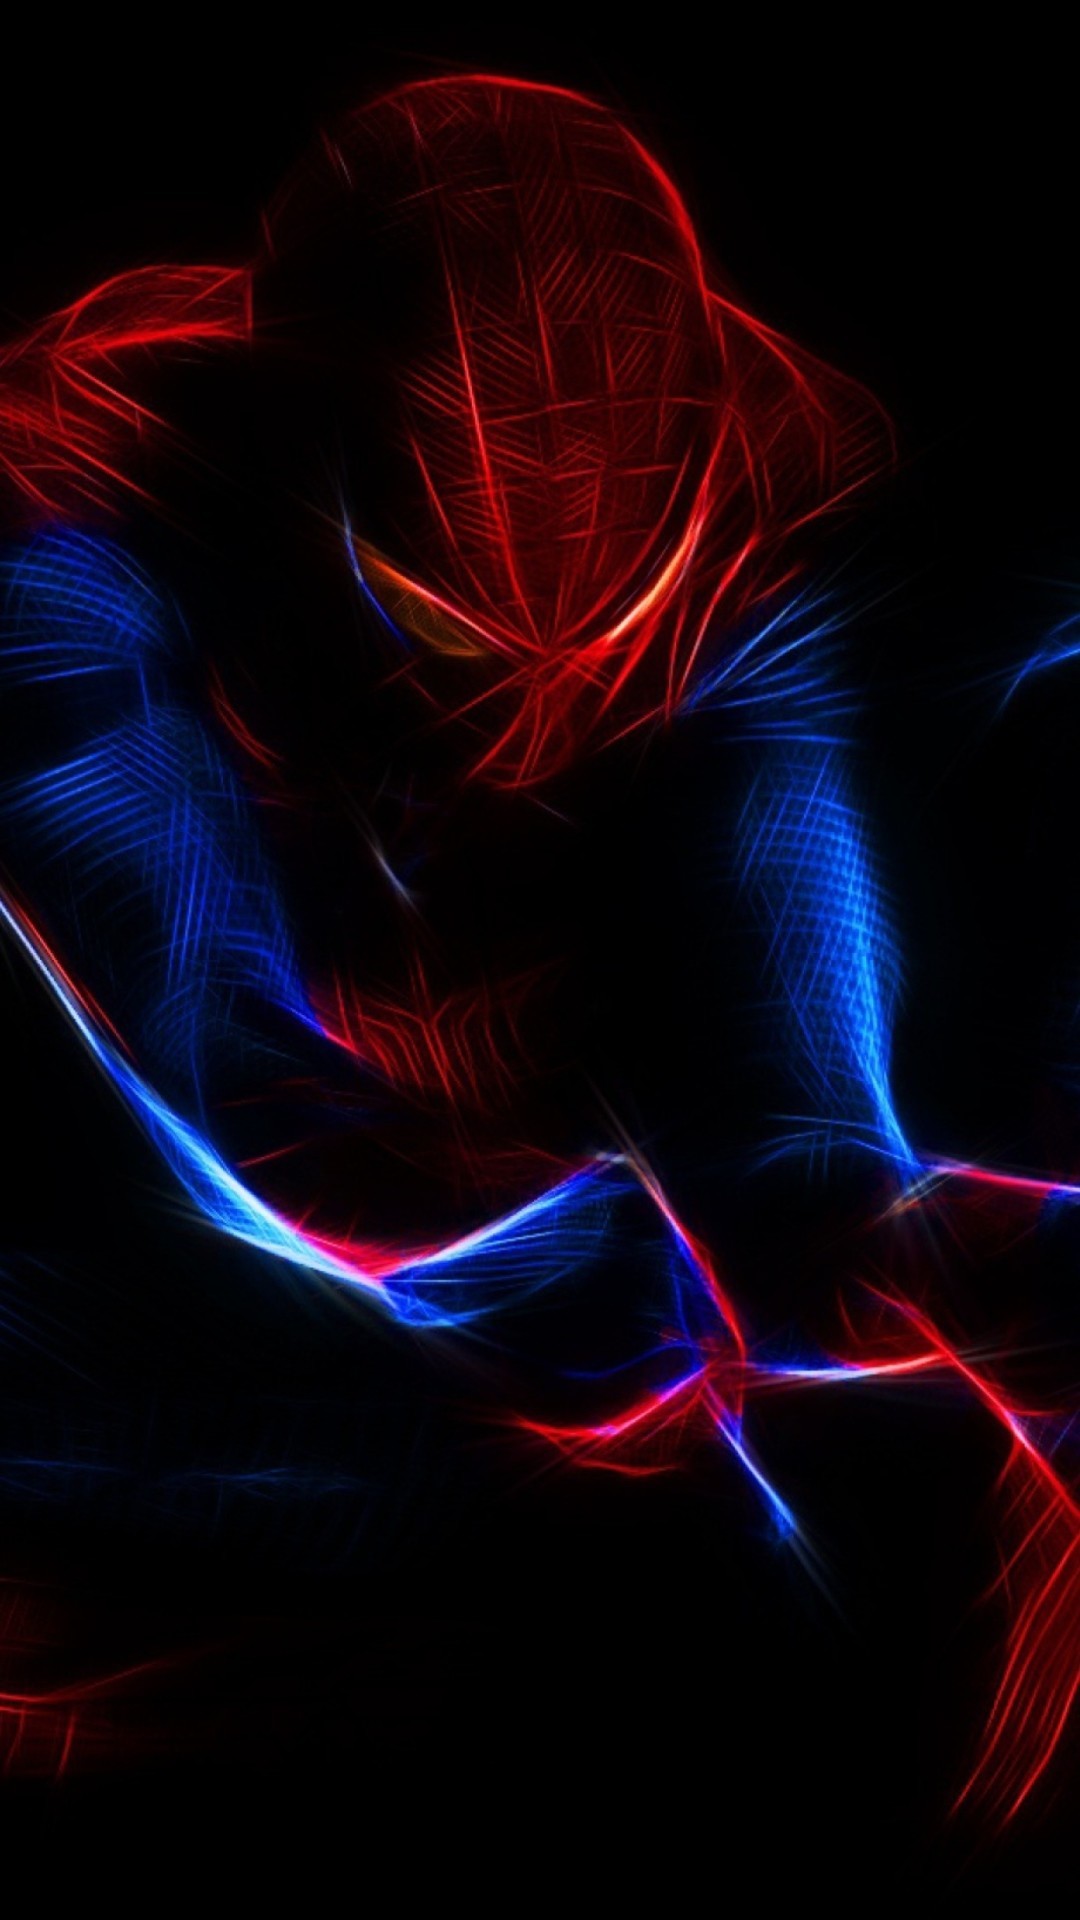 fond d'écran spiderman iphone,rouge,bleu,bleu électrique,lumière,conception graphique